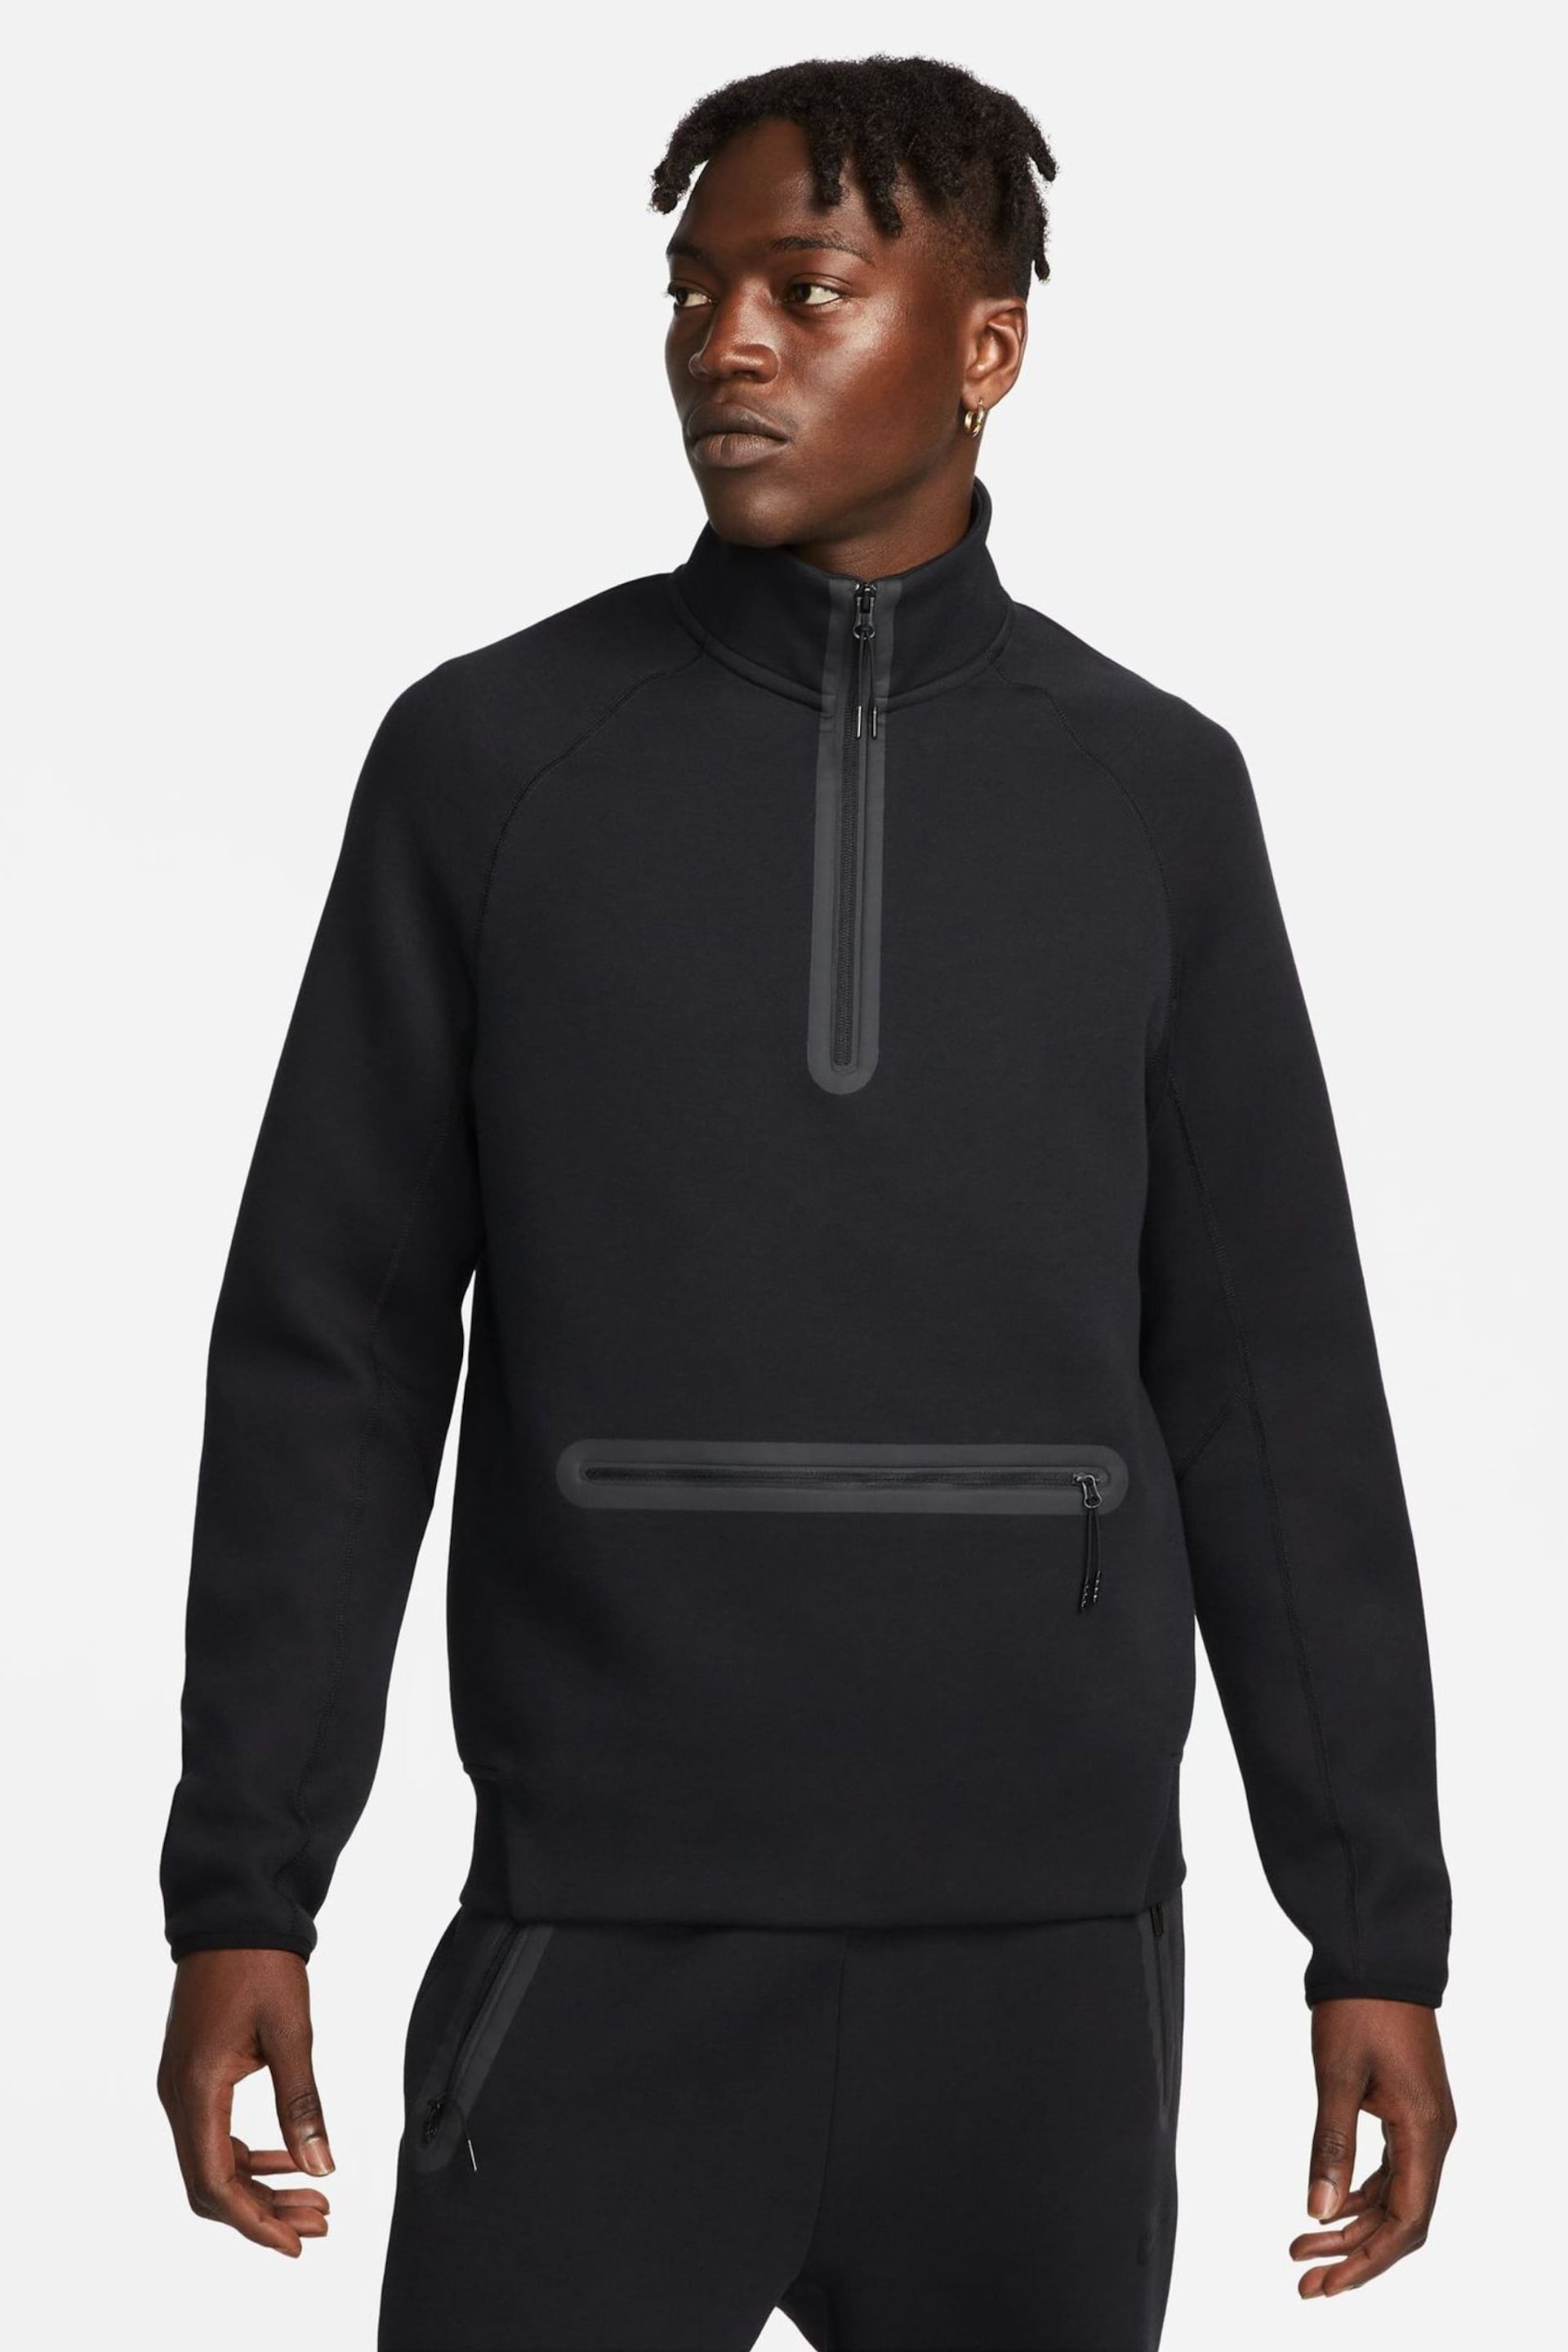 Nike Black Tech Fleece Half Zip Sweatshirt - Image 4 of 19